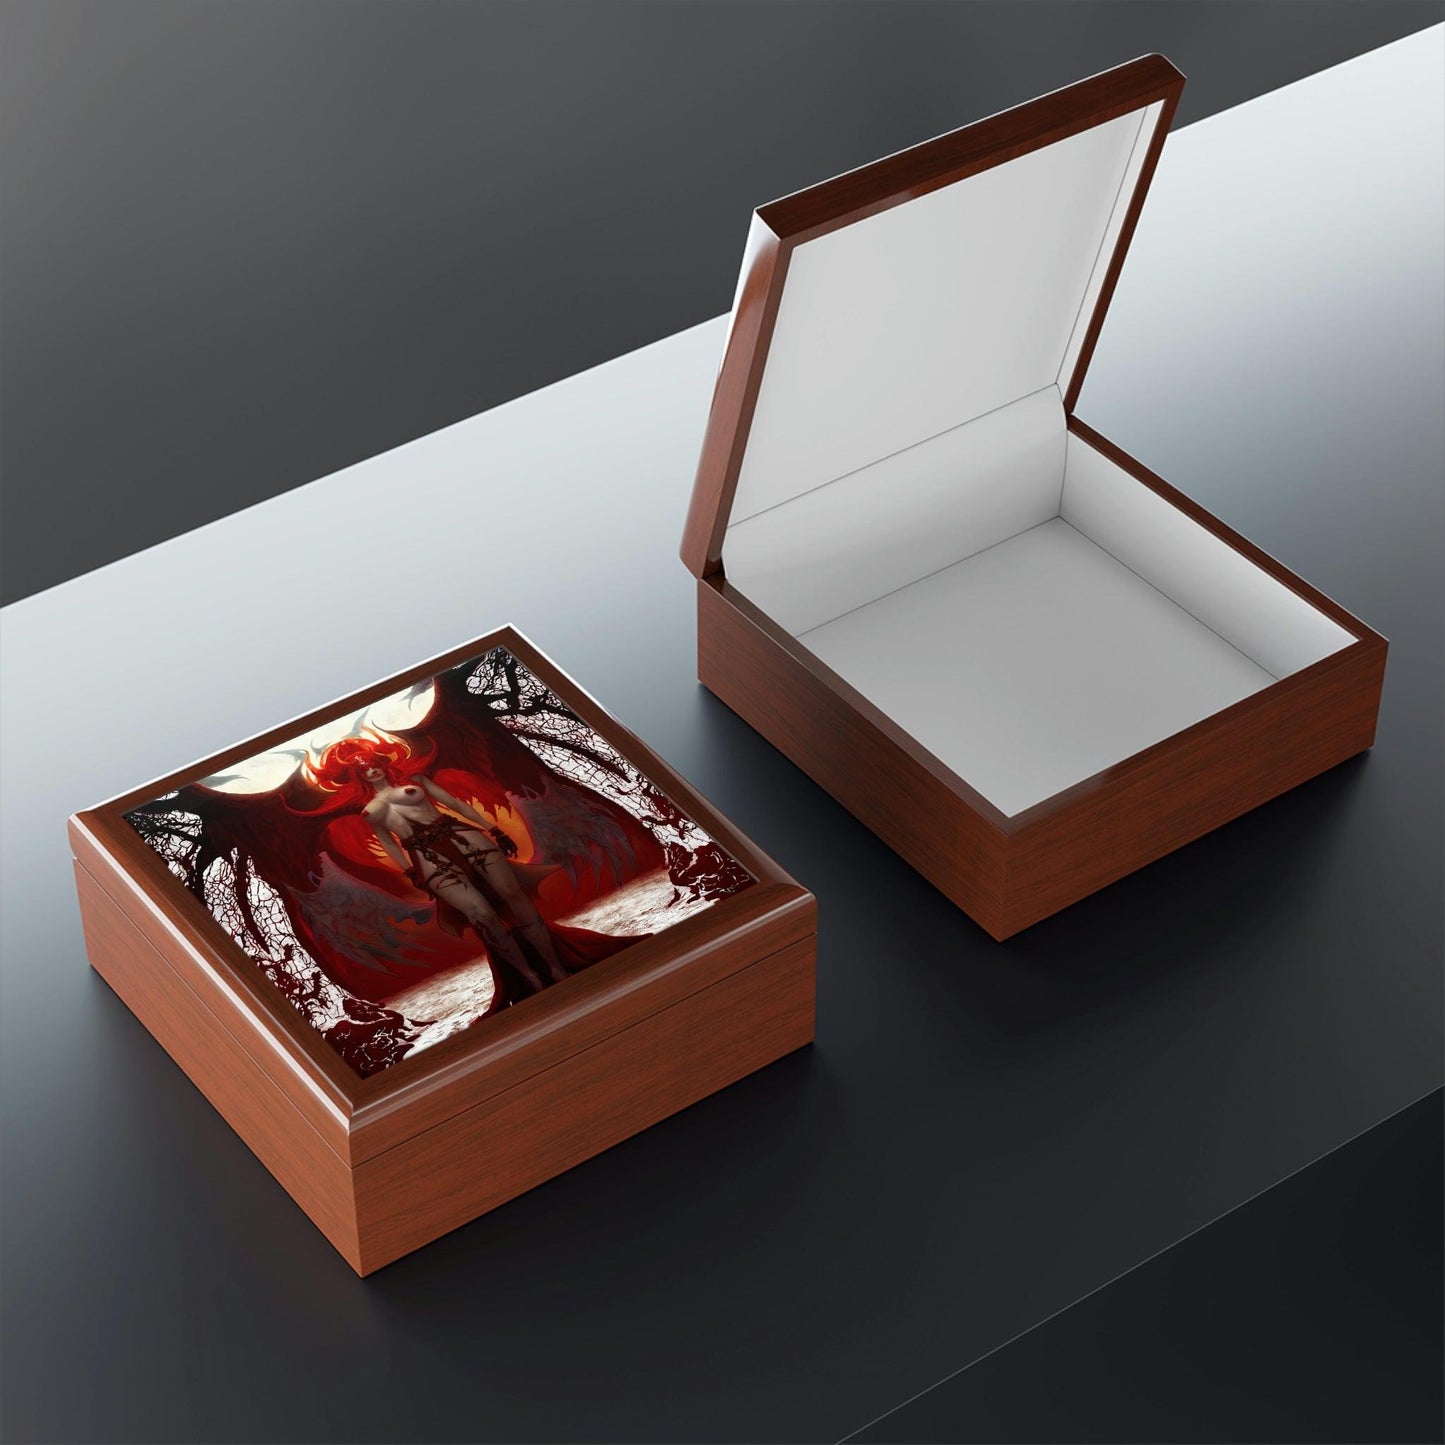 Lilith-Jewelry-Box-የእርስዎን-ታሊስማን-እና-ቀለበቶችን ለማከማቸት-6